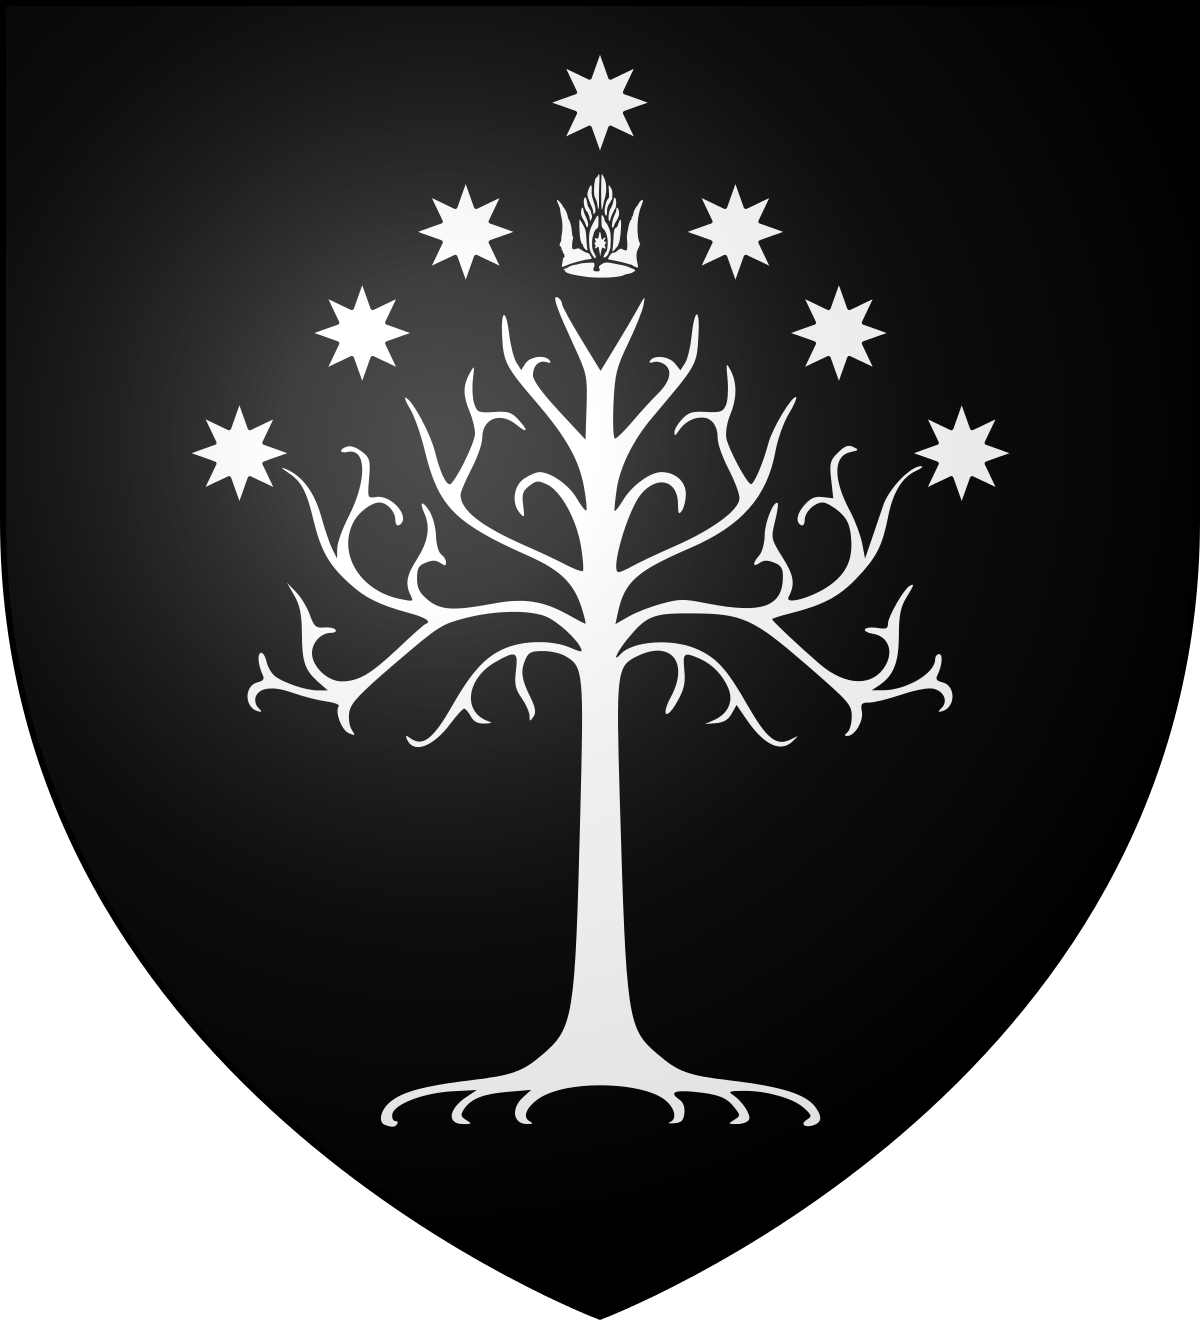 Like Symbol Circle with Black Tree Logo - White Tree of Gondor